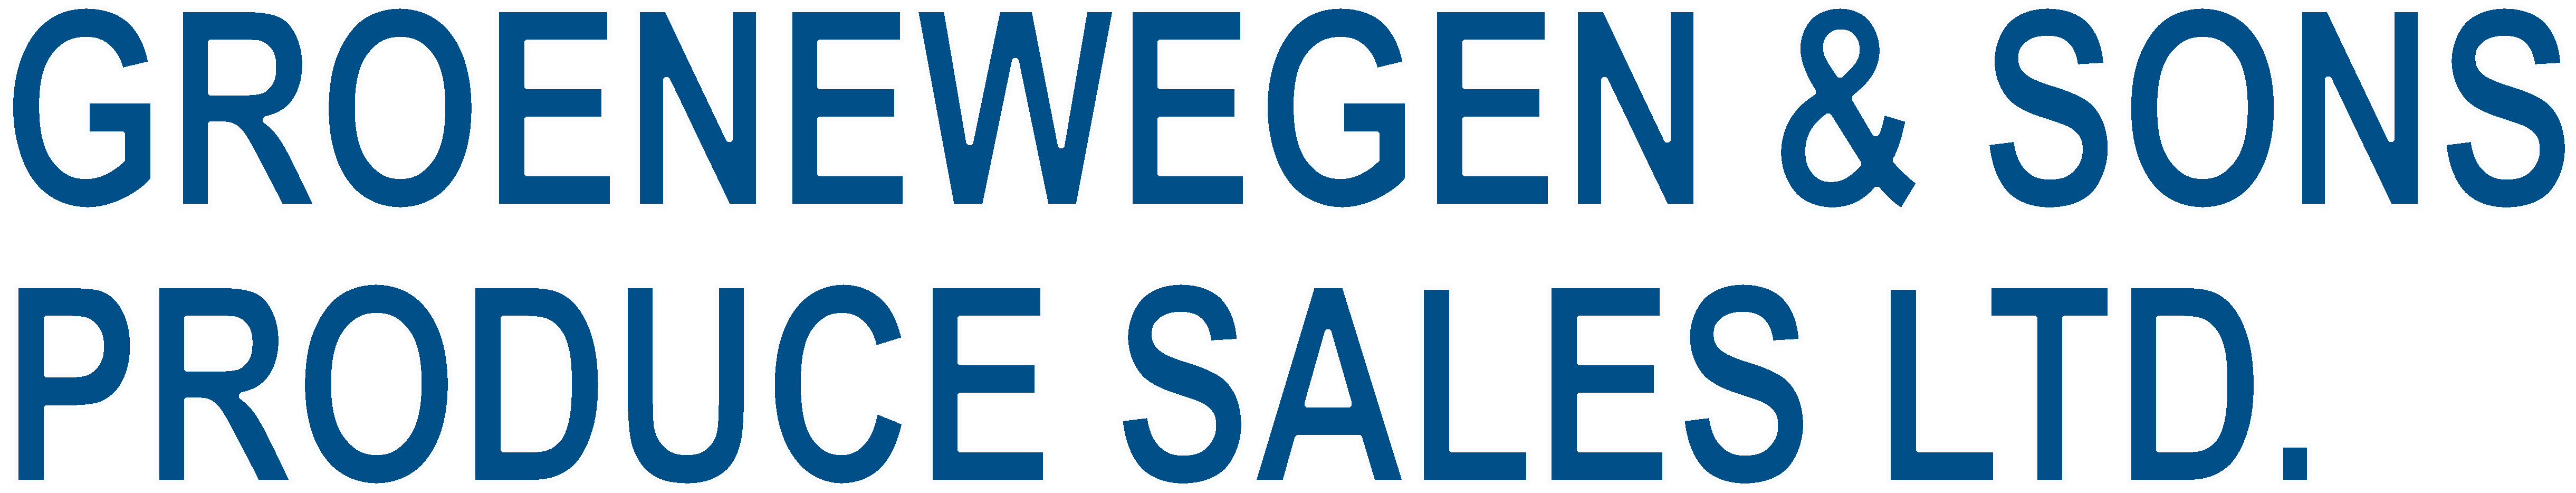 Groenewegen & Sons Produce Sales Ltd Groenewegen & Sons Produce Sales Ltd